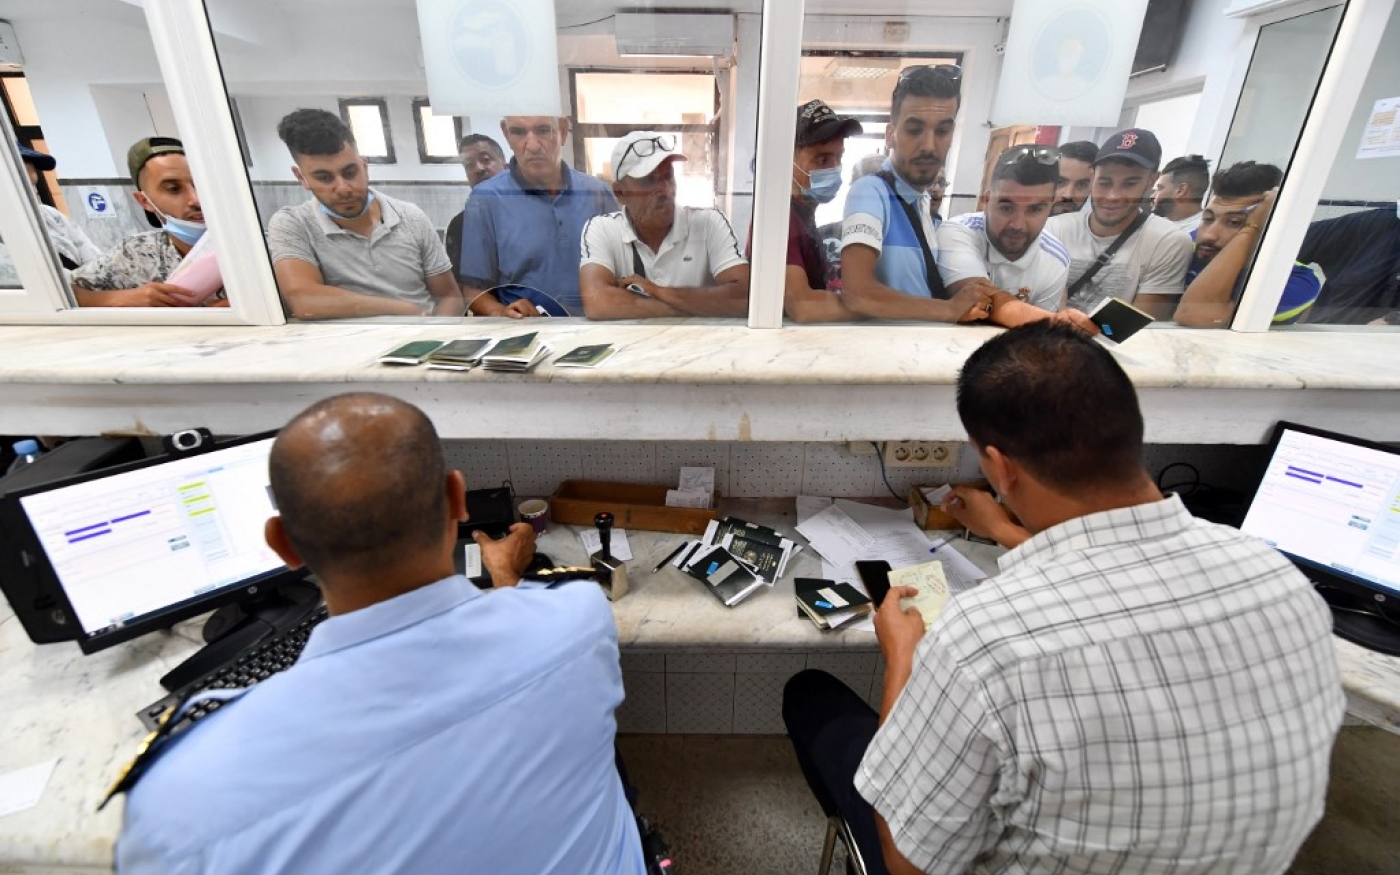 La police des frontières tunisienne contrôle les passeports, le jour de la réouverture de la frontière algéro-tunisienne, le 15 juillet 2022 (AFP/Fethi Belaid)